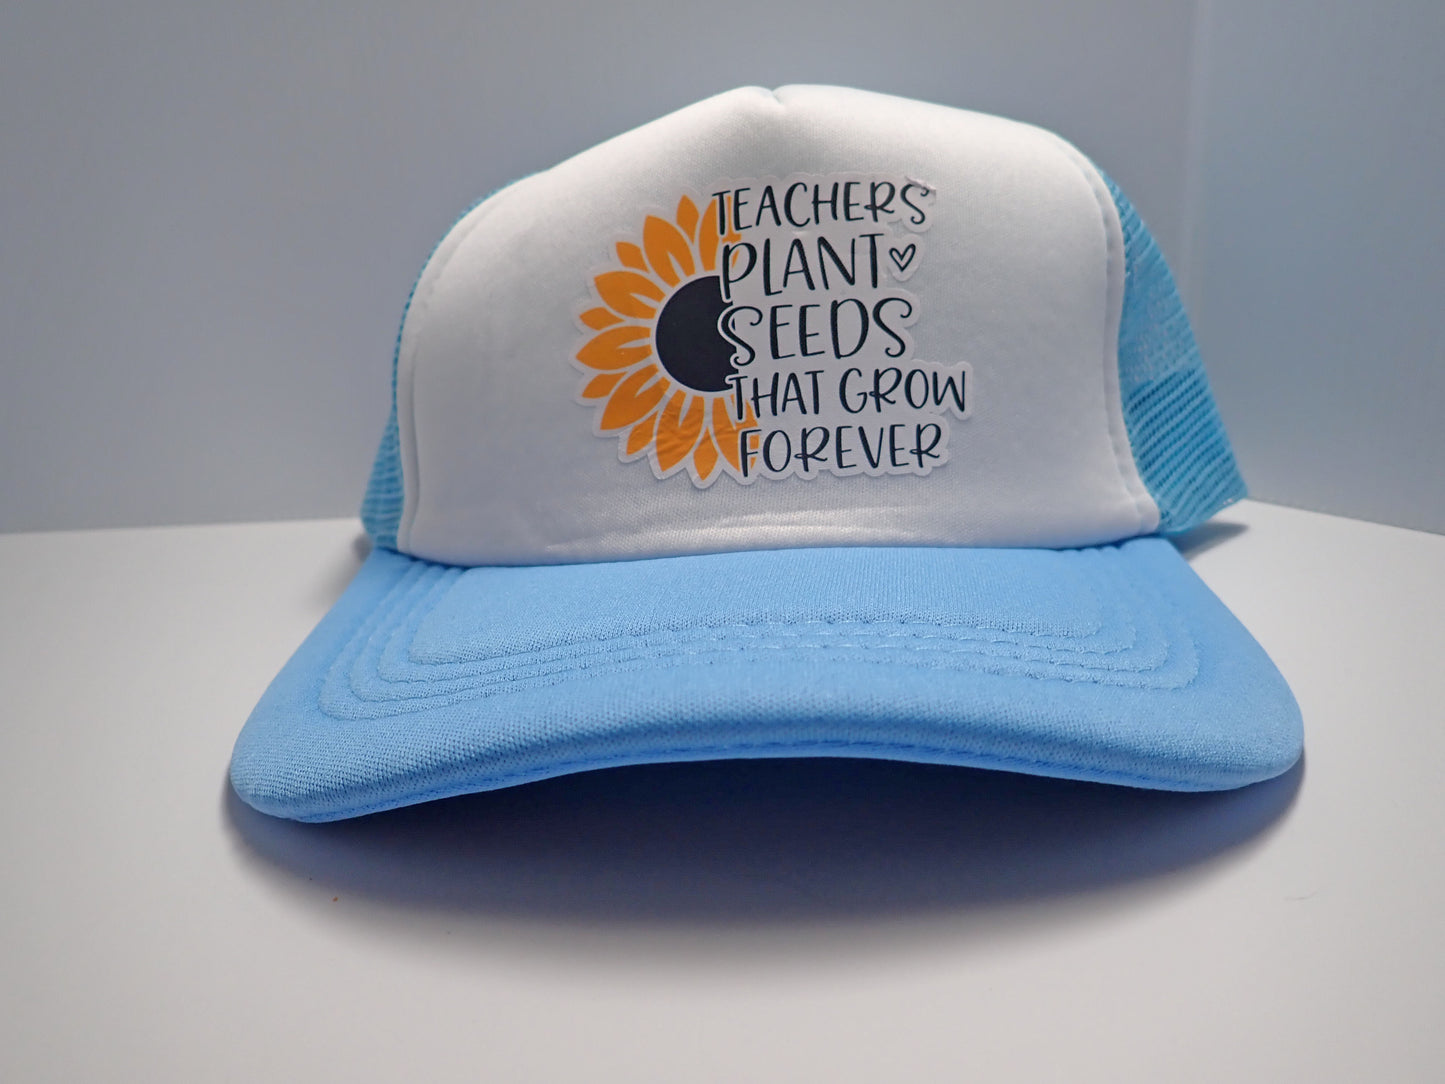 Ball cap, trucker cap, hat, blue, white, one size fits most, teacher focal, gift